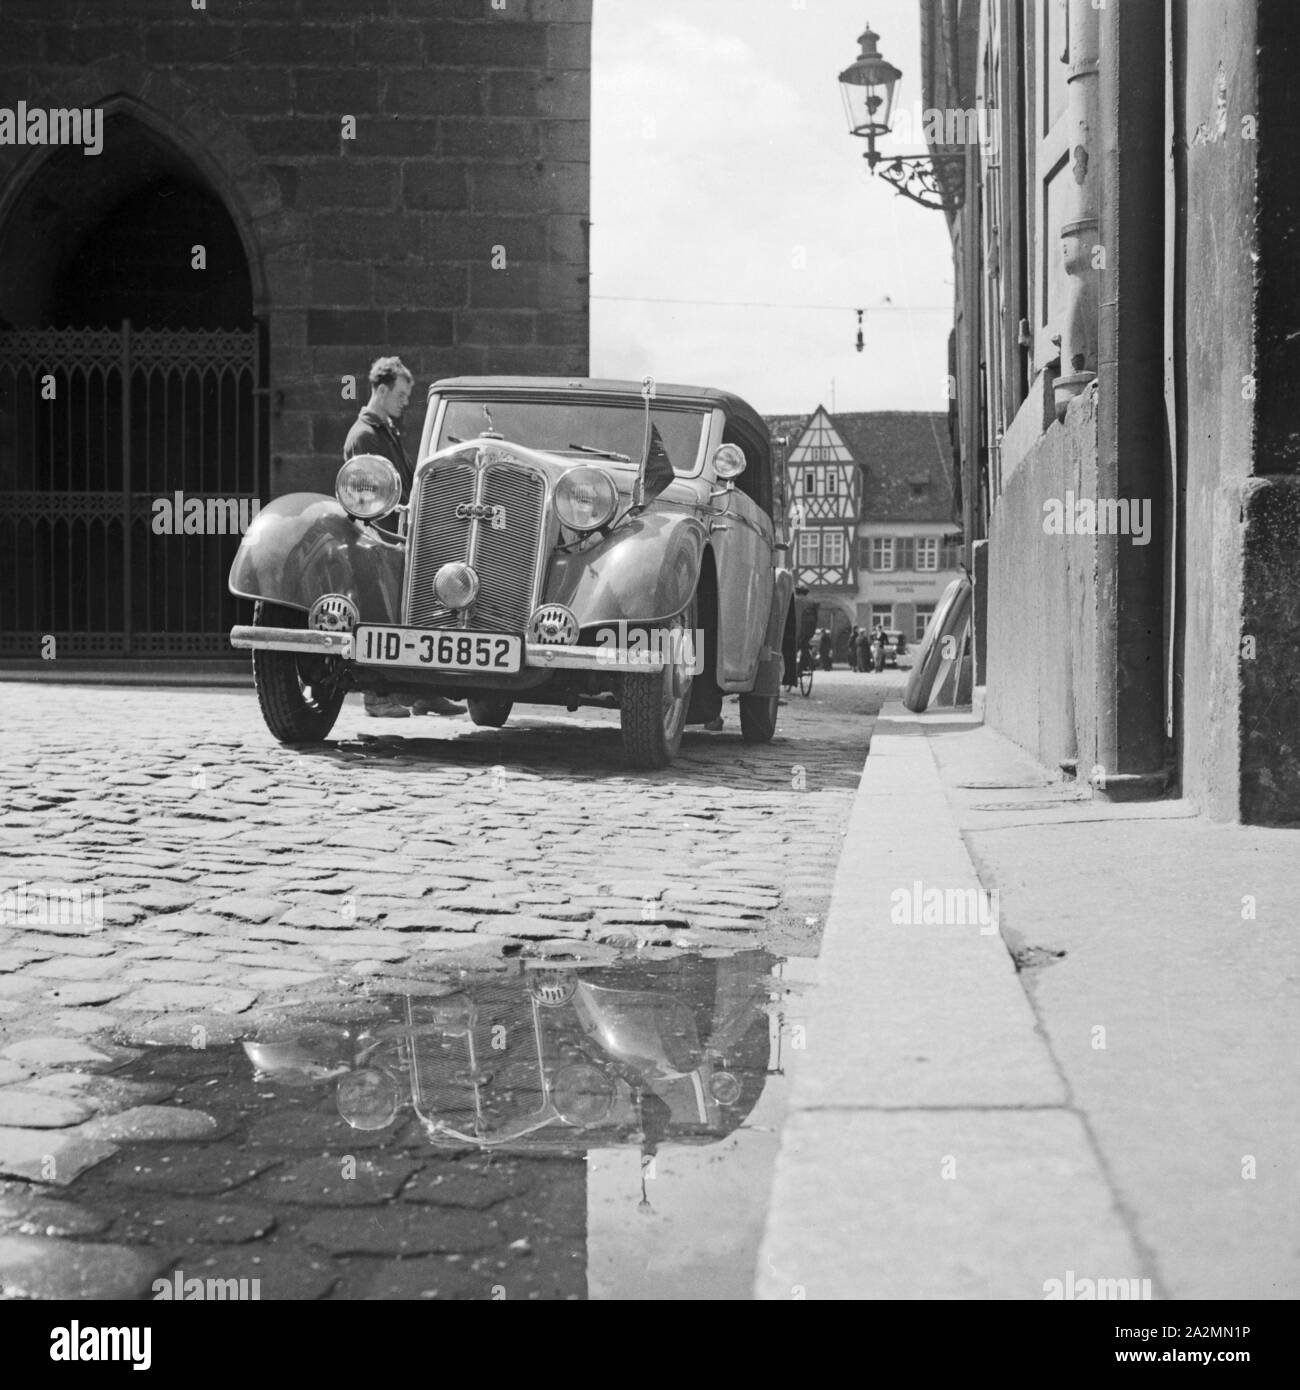 Ein Auto eines Parteifunktionärs auf dem Kopfsteinpflaster vor einem Rathaus in Deutschland, 1930er Jahre. Car of a Nazi official parking in front of a city hall in Germany, 1930s. Stock Photo